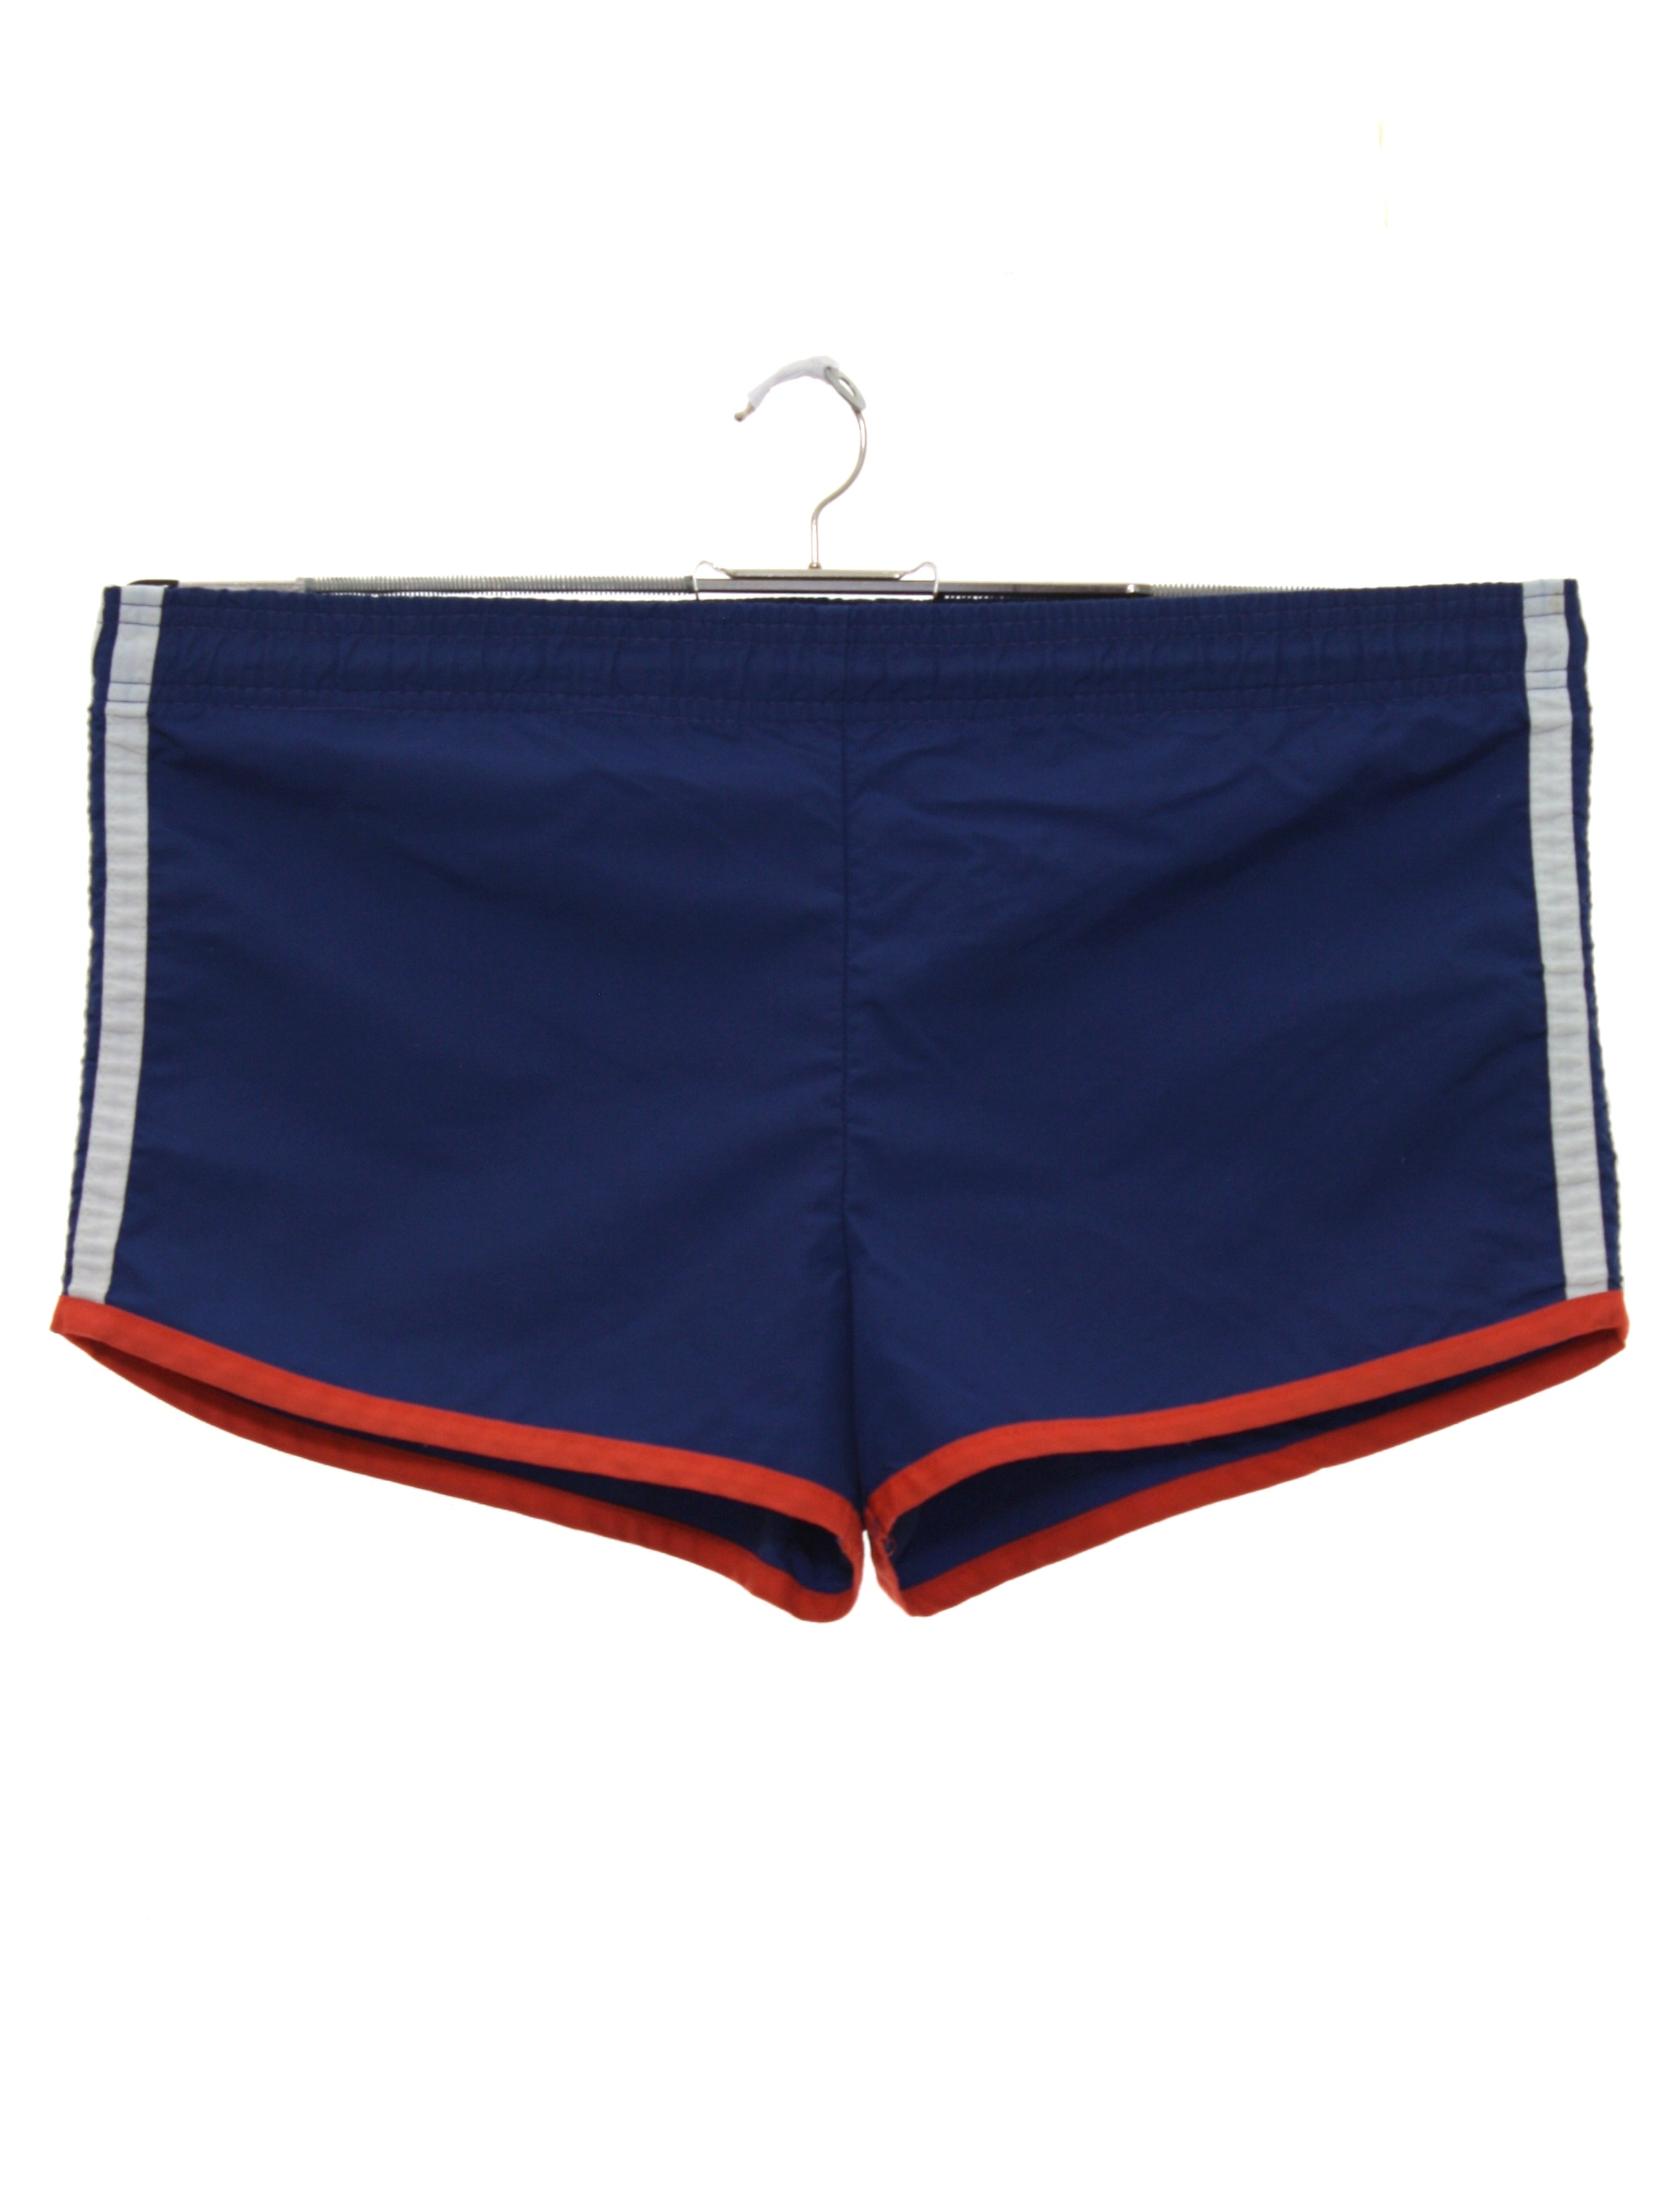 Retro 1980s Swimsuit/Swimwear: 80s -Catalina- Mens navy blue background ...